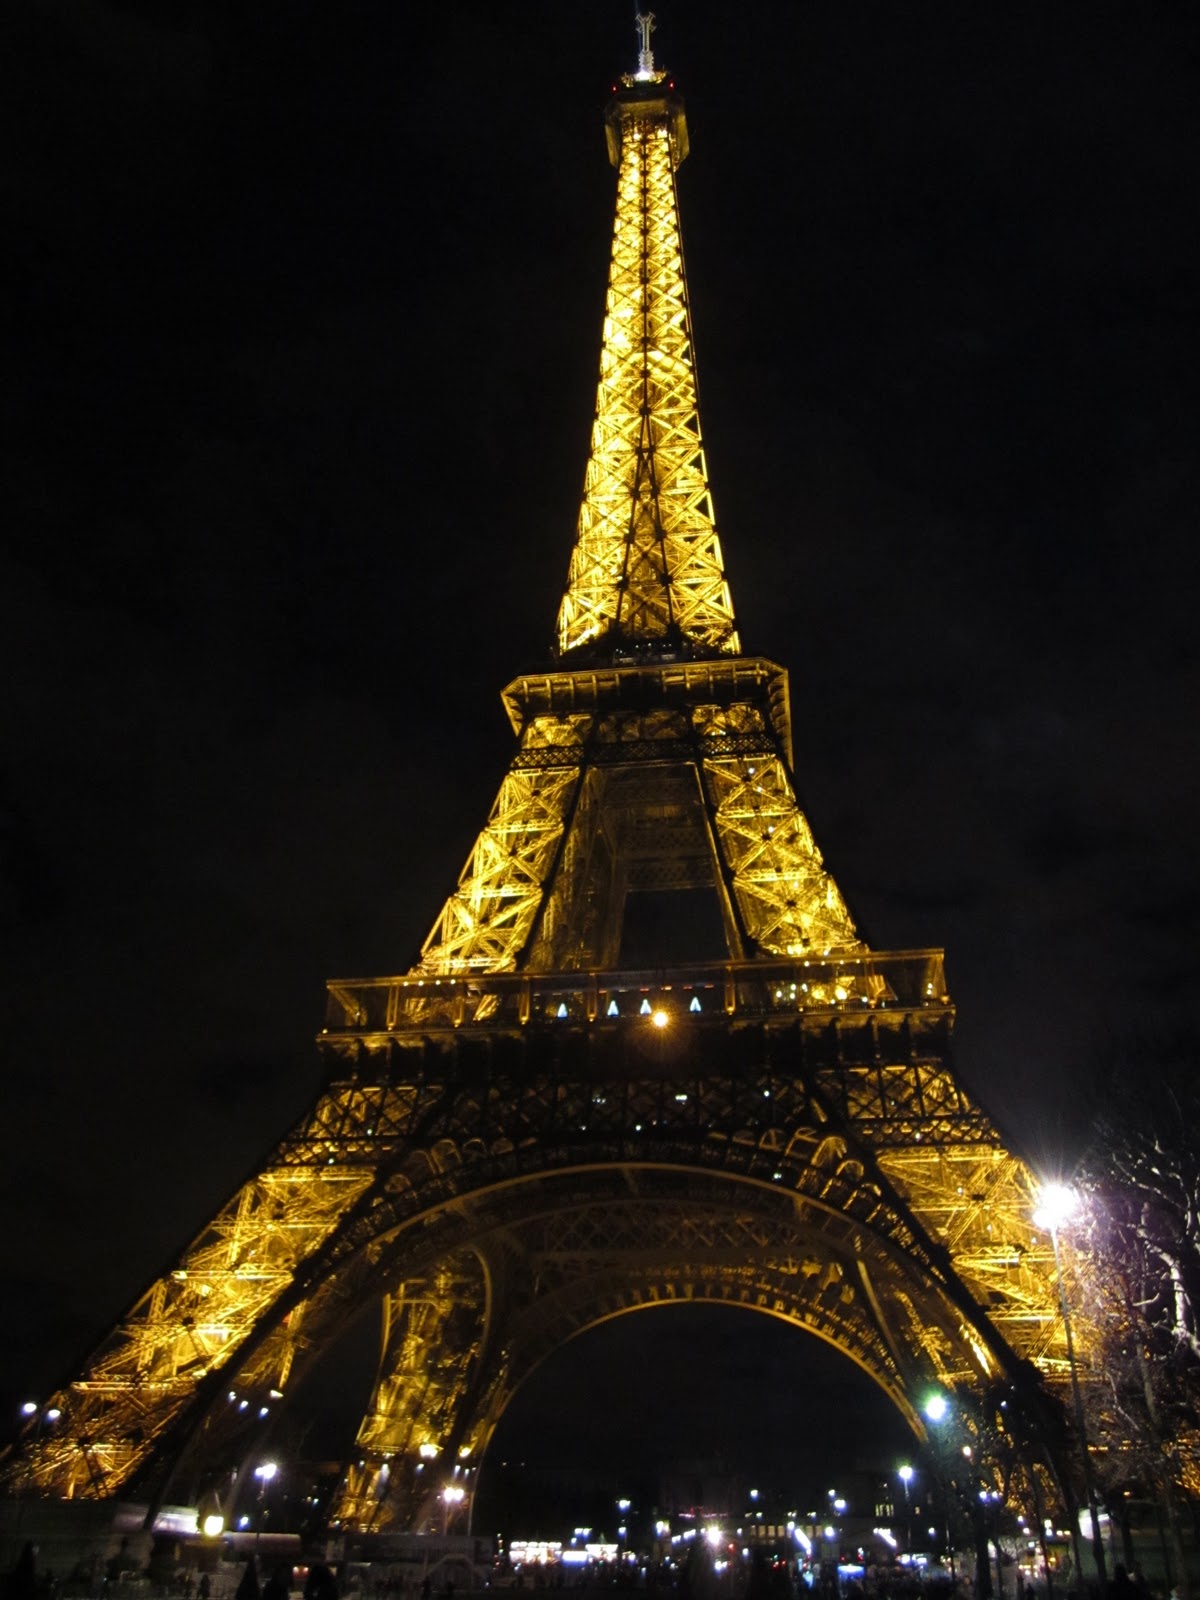 http://1.bp.blogspot.com/_dZVCcPrTvbo/TTNaK3GVbKI/AAAAAAAAABM/tozeRJcoXhM/s1600/Eiffel+Tower+Lit+Up.JPG